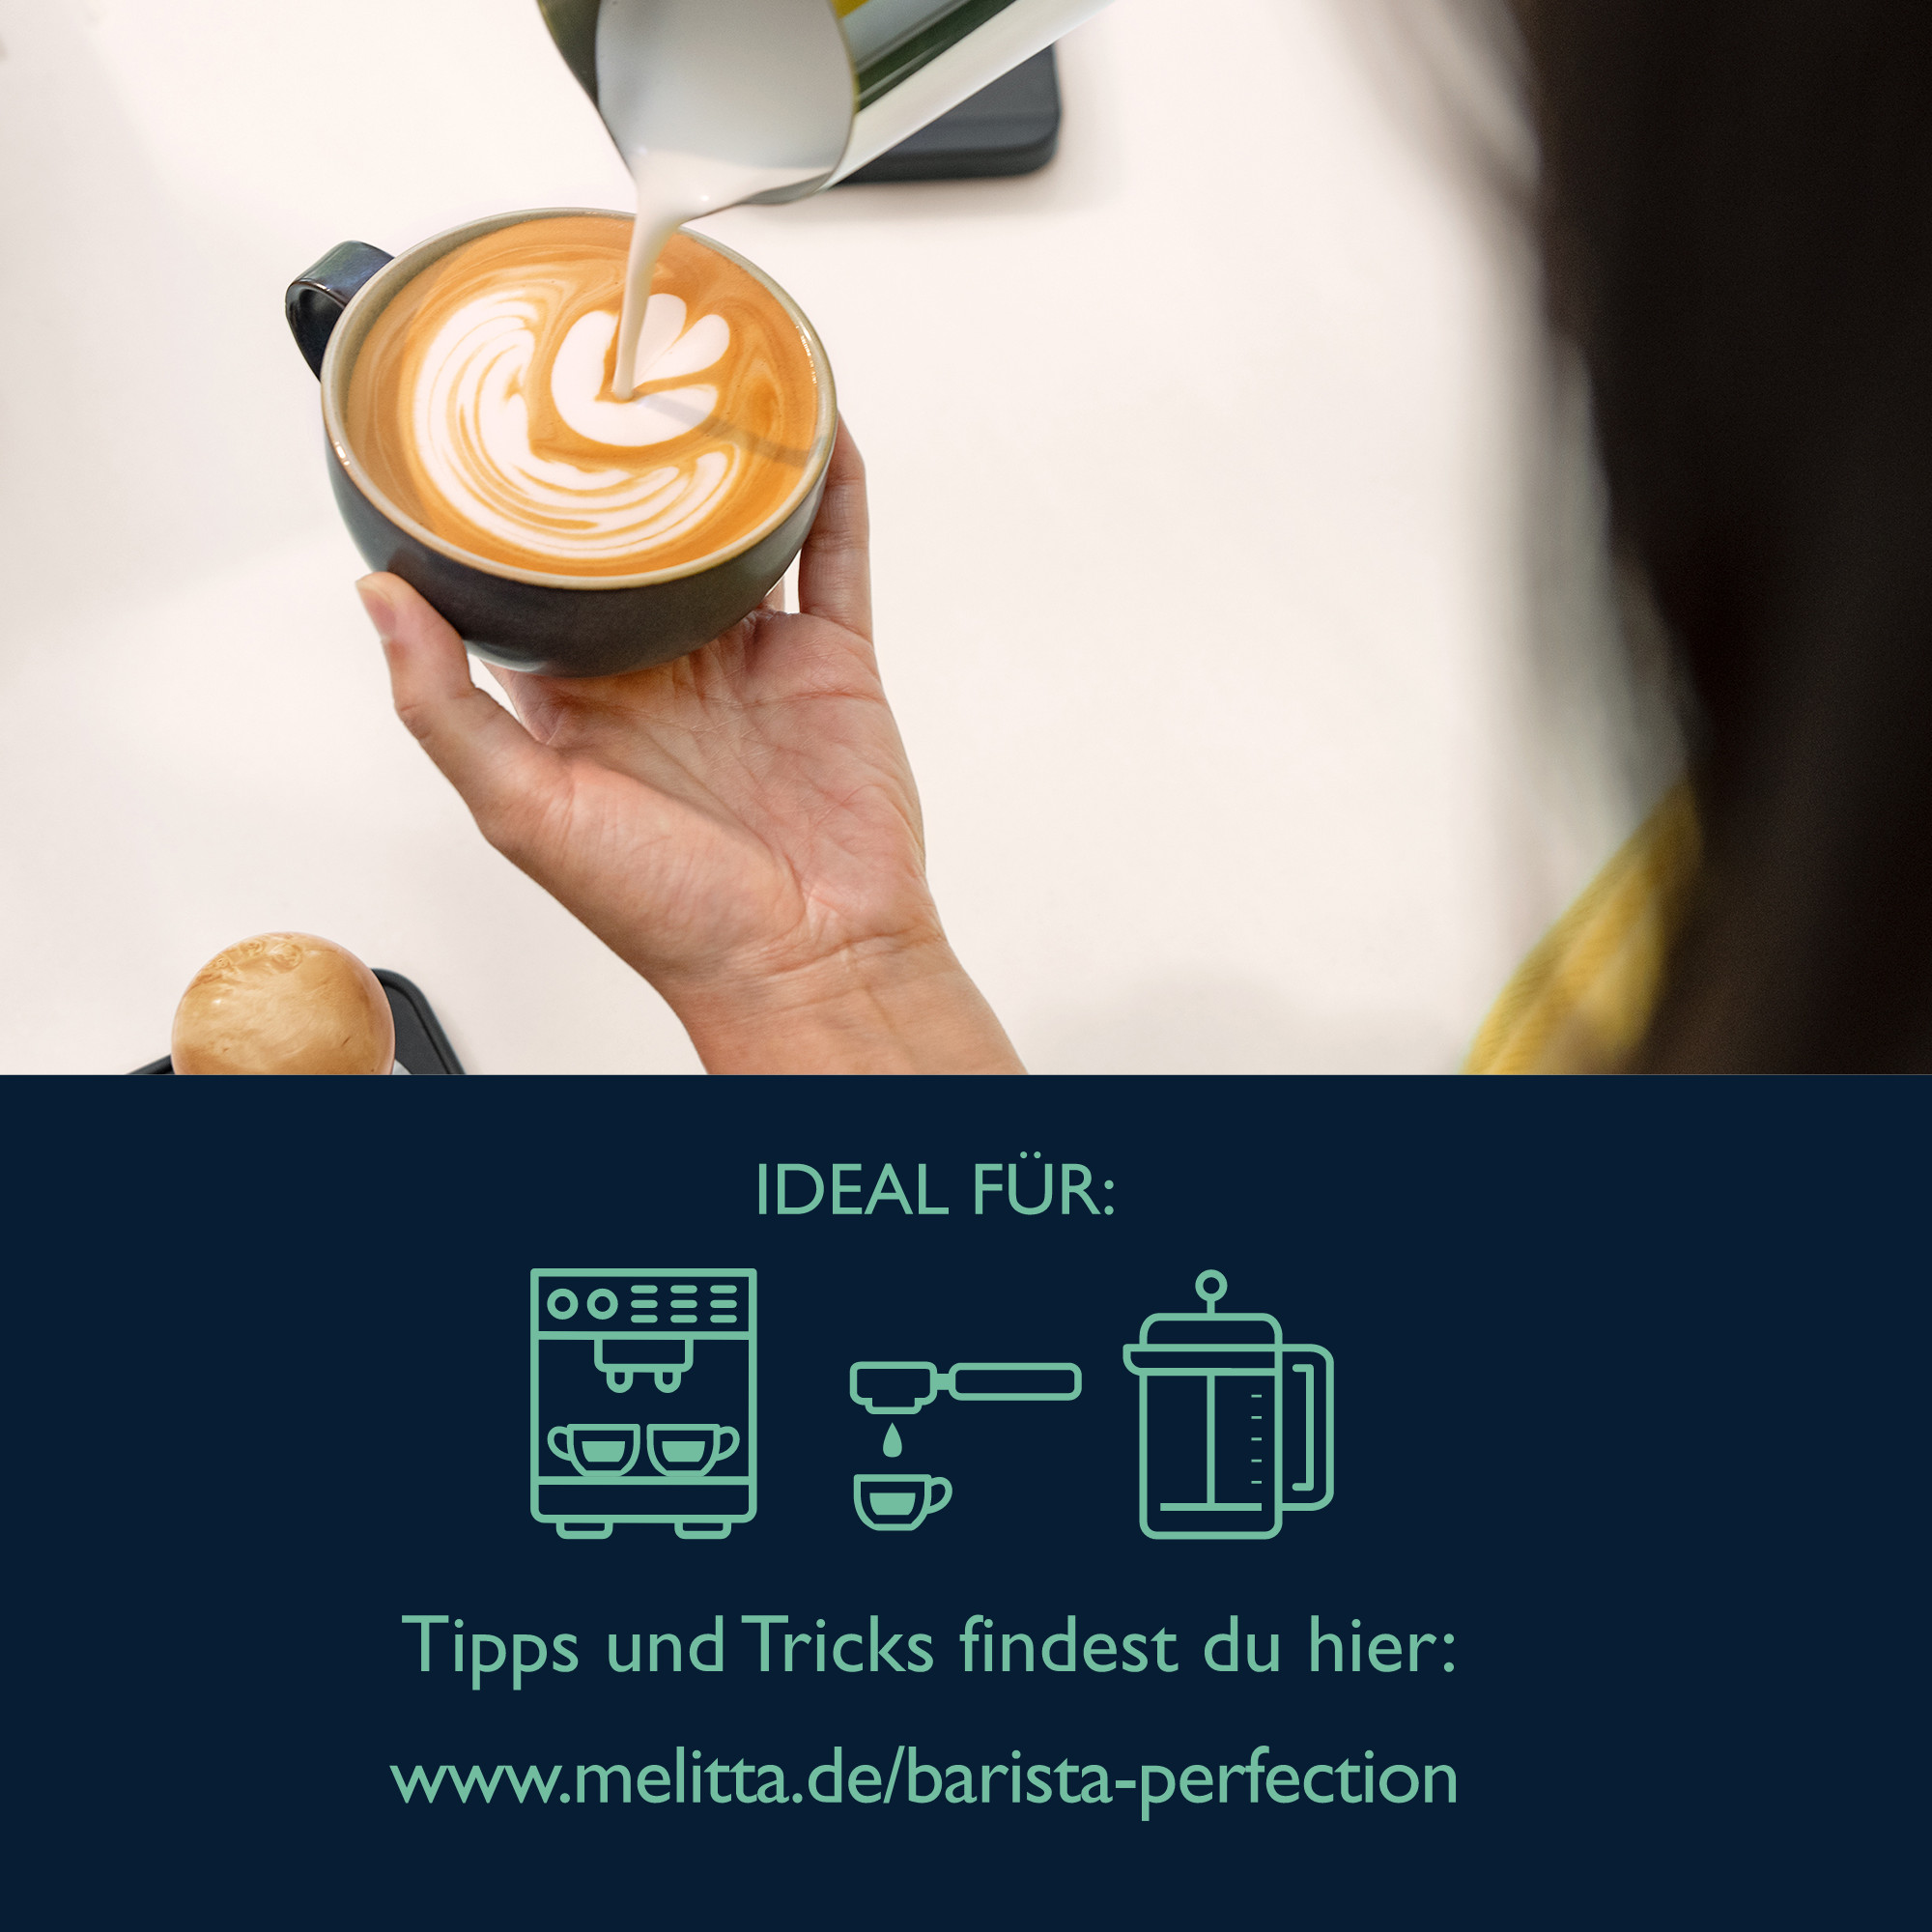 MELITTA Barista Perfection Brasilien Kaffeebohnen